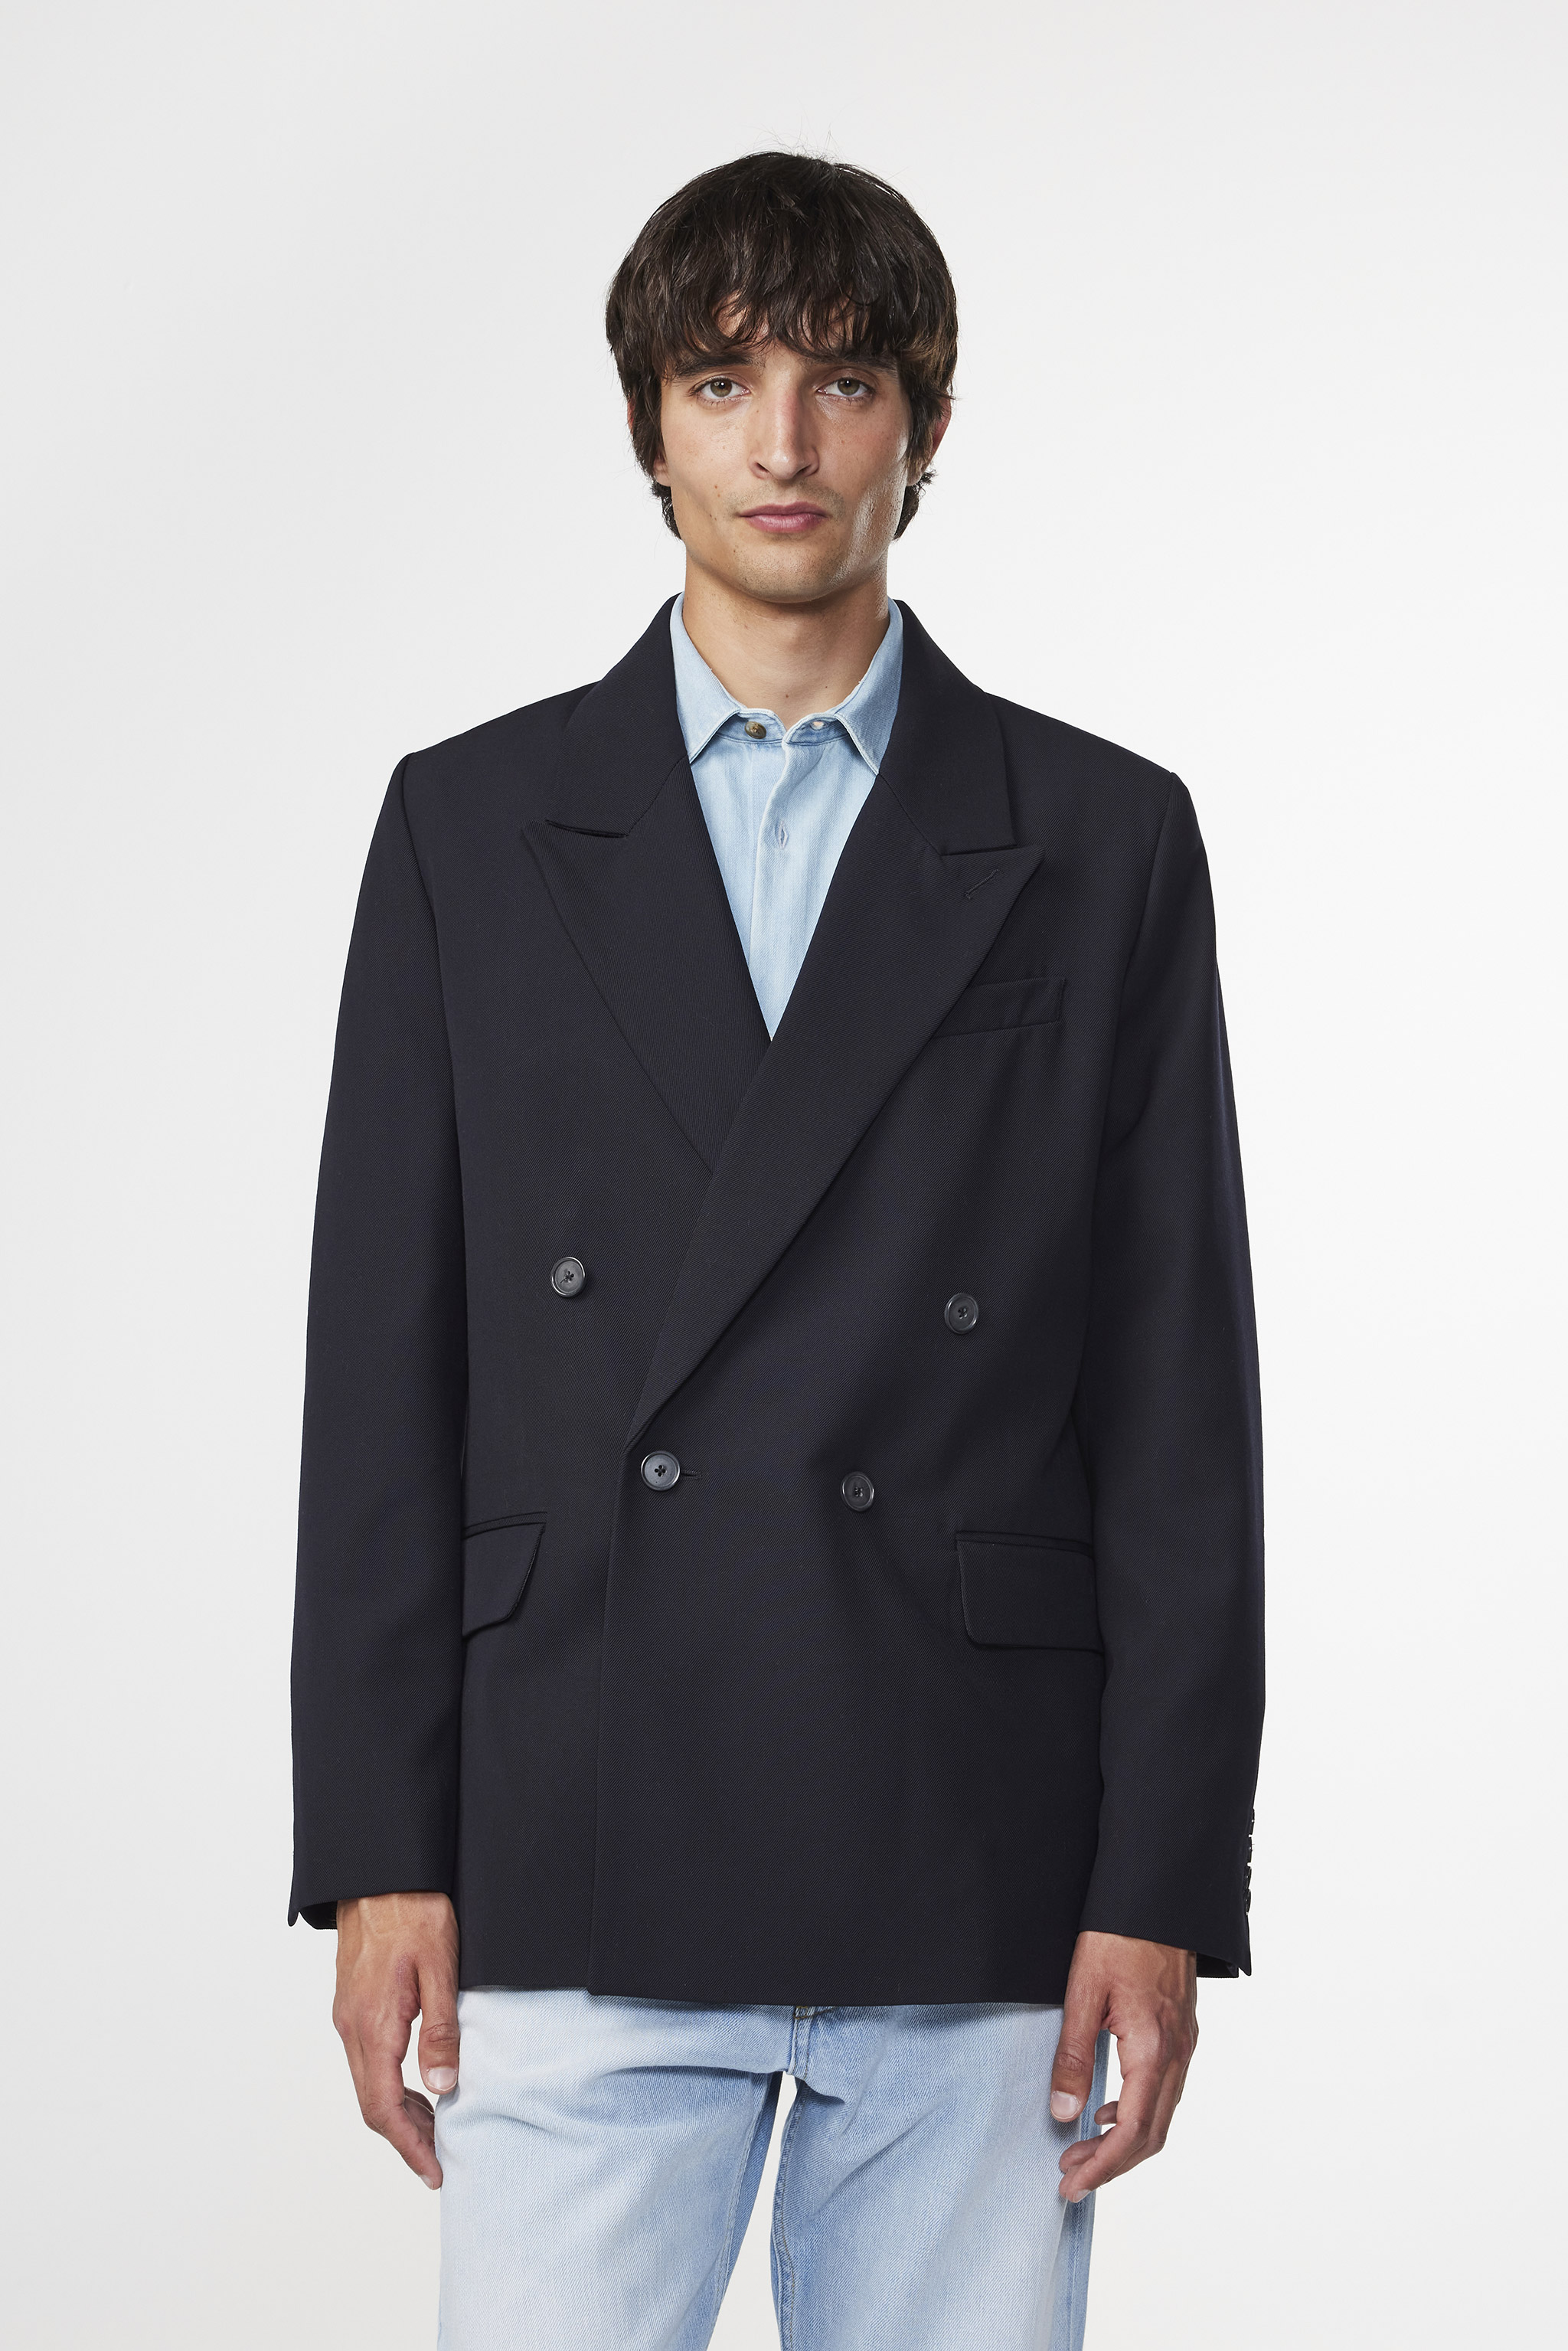 Bertil 1728 men's blazer - Blue - Buy online at NN.07®